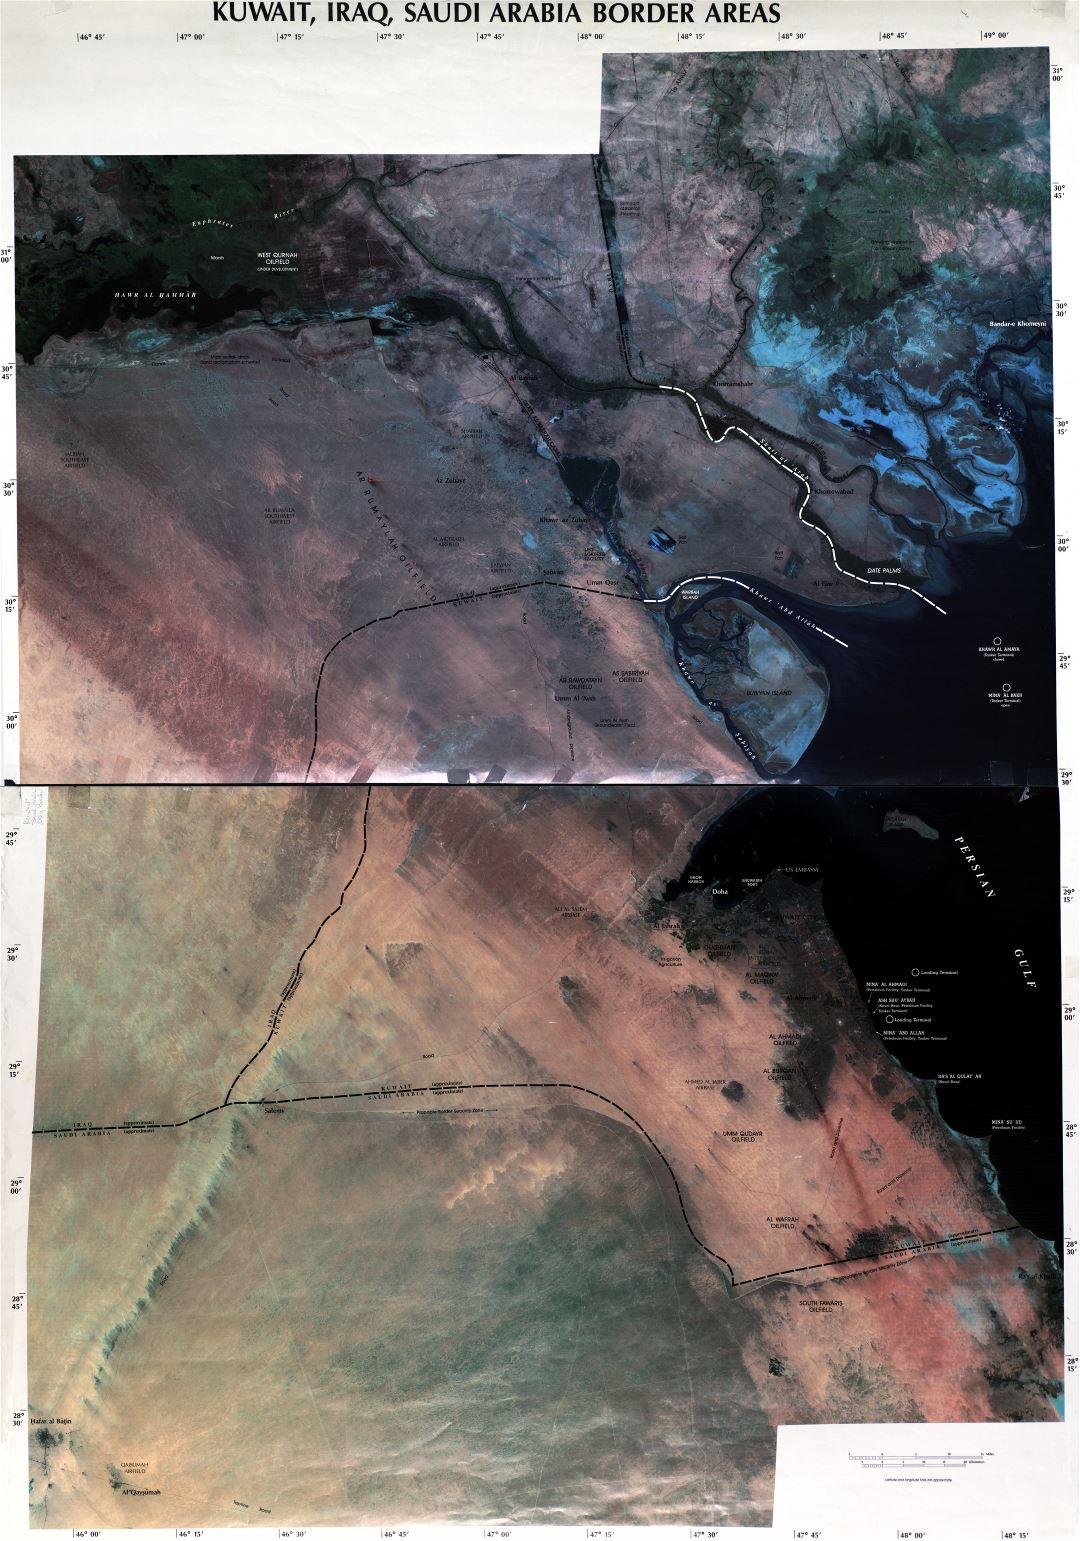 Grande detallado mapa satelital de las áreas fronterizas de Kuwait, Iraq y Arabia Saudita - 2003